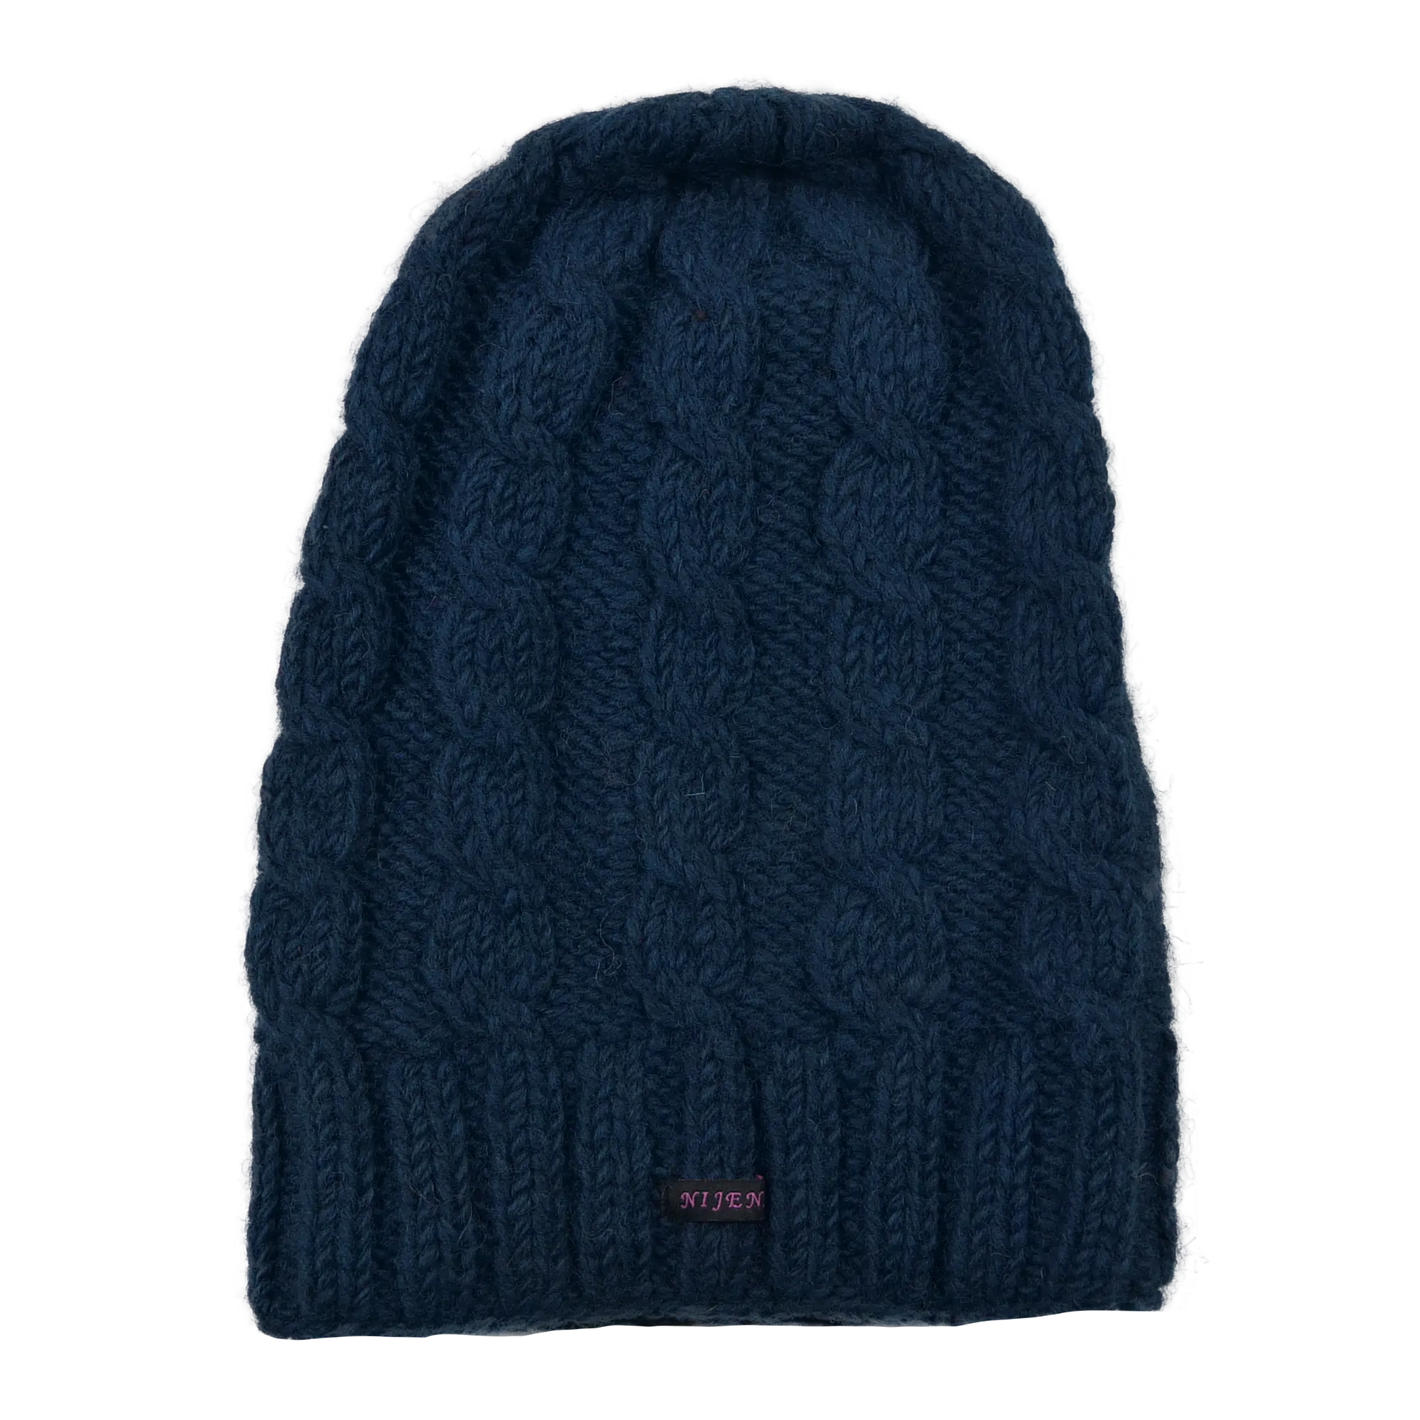 Hand-knitted Long Beanie Nijens Wool Hat in Night Blue Eatna-16